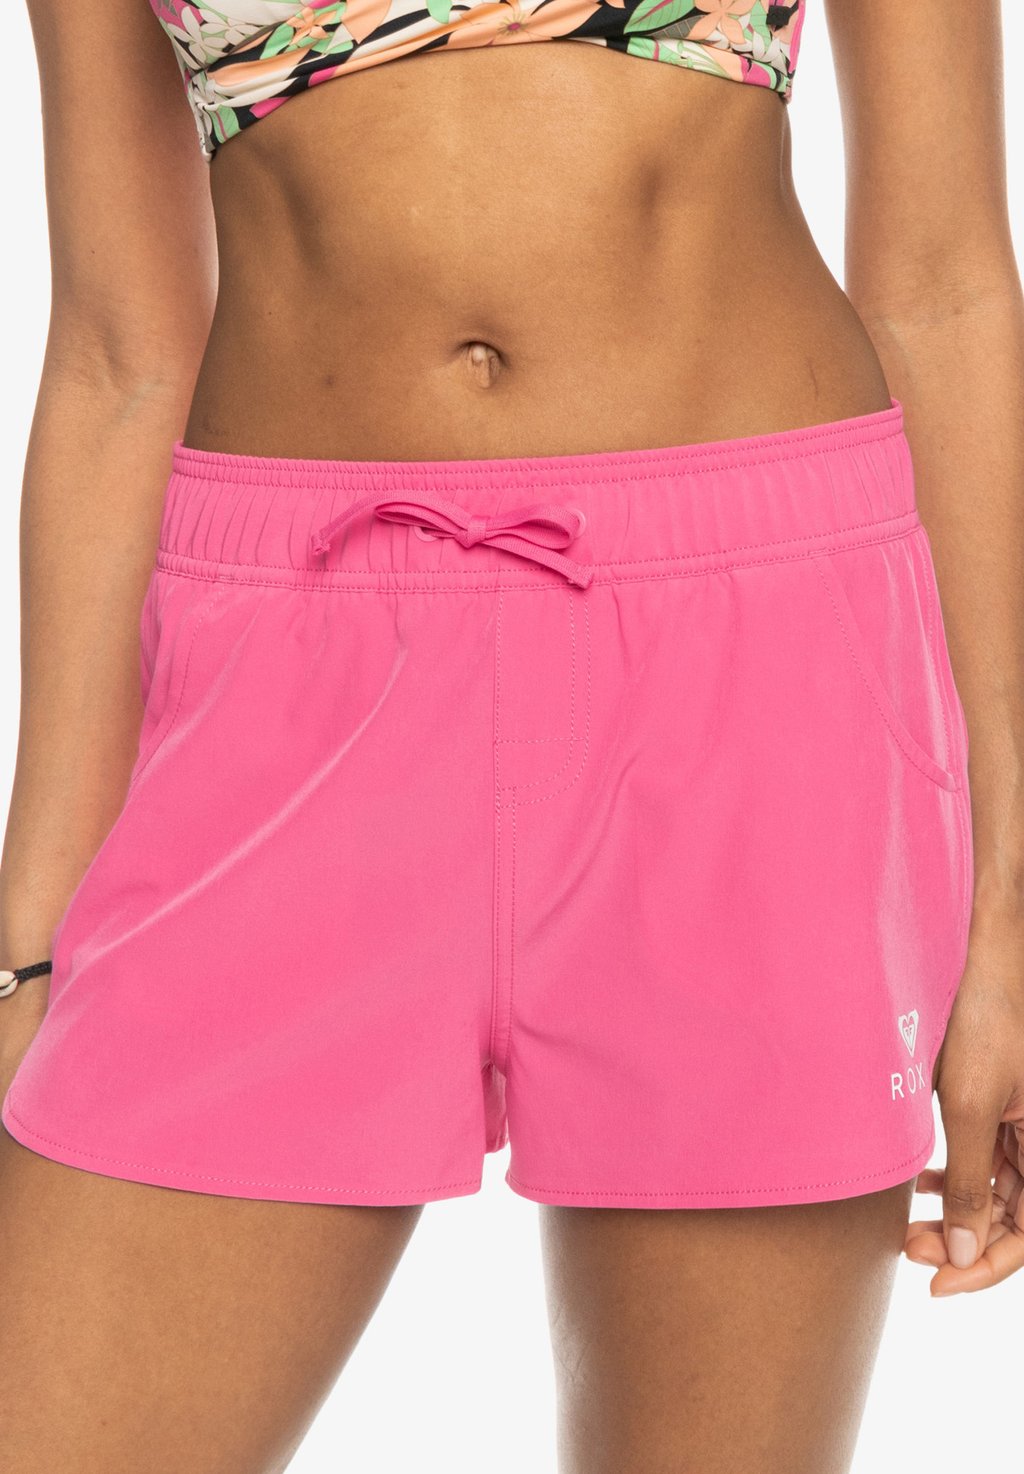 Шорты для плавания WAVE 2 INCH BS Roxy, цвет shocking pink классические пляжные хипстерские брюки с принтом roxy цвет shocking pink hello aloha